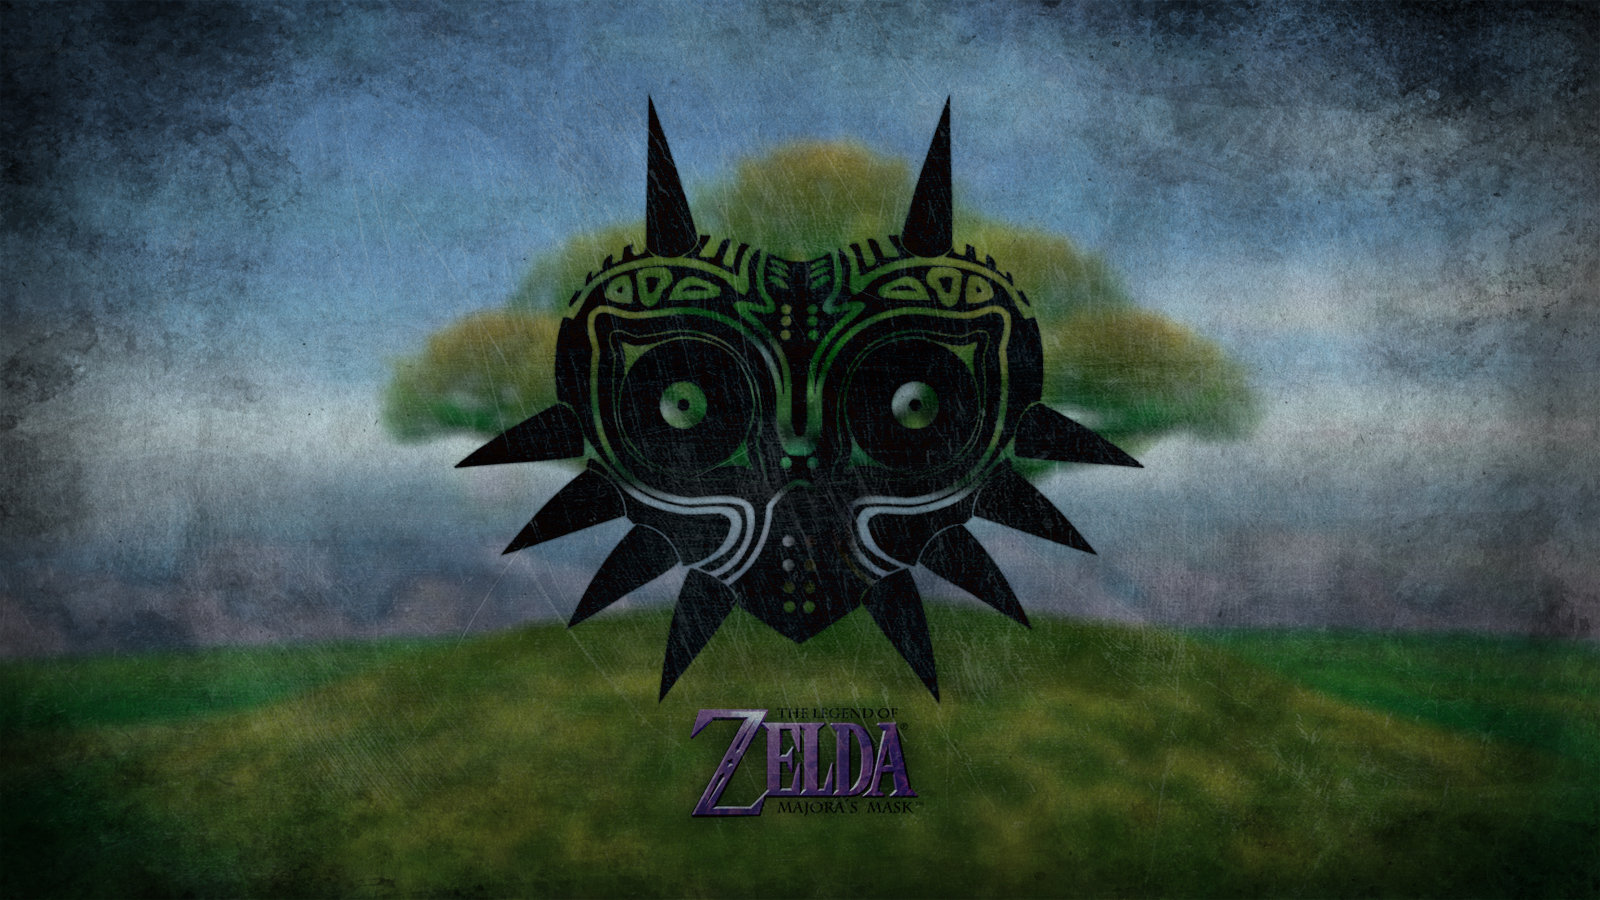 Free download The Legend Of Zelda: Majora's Mask background ID:145459 hd 1600x900 for desktop